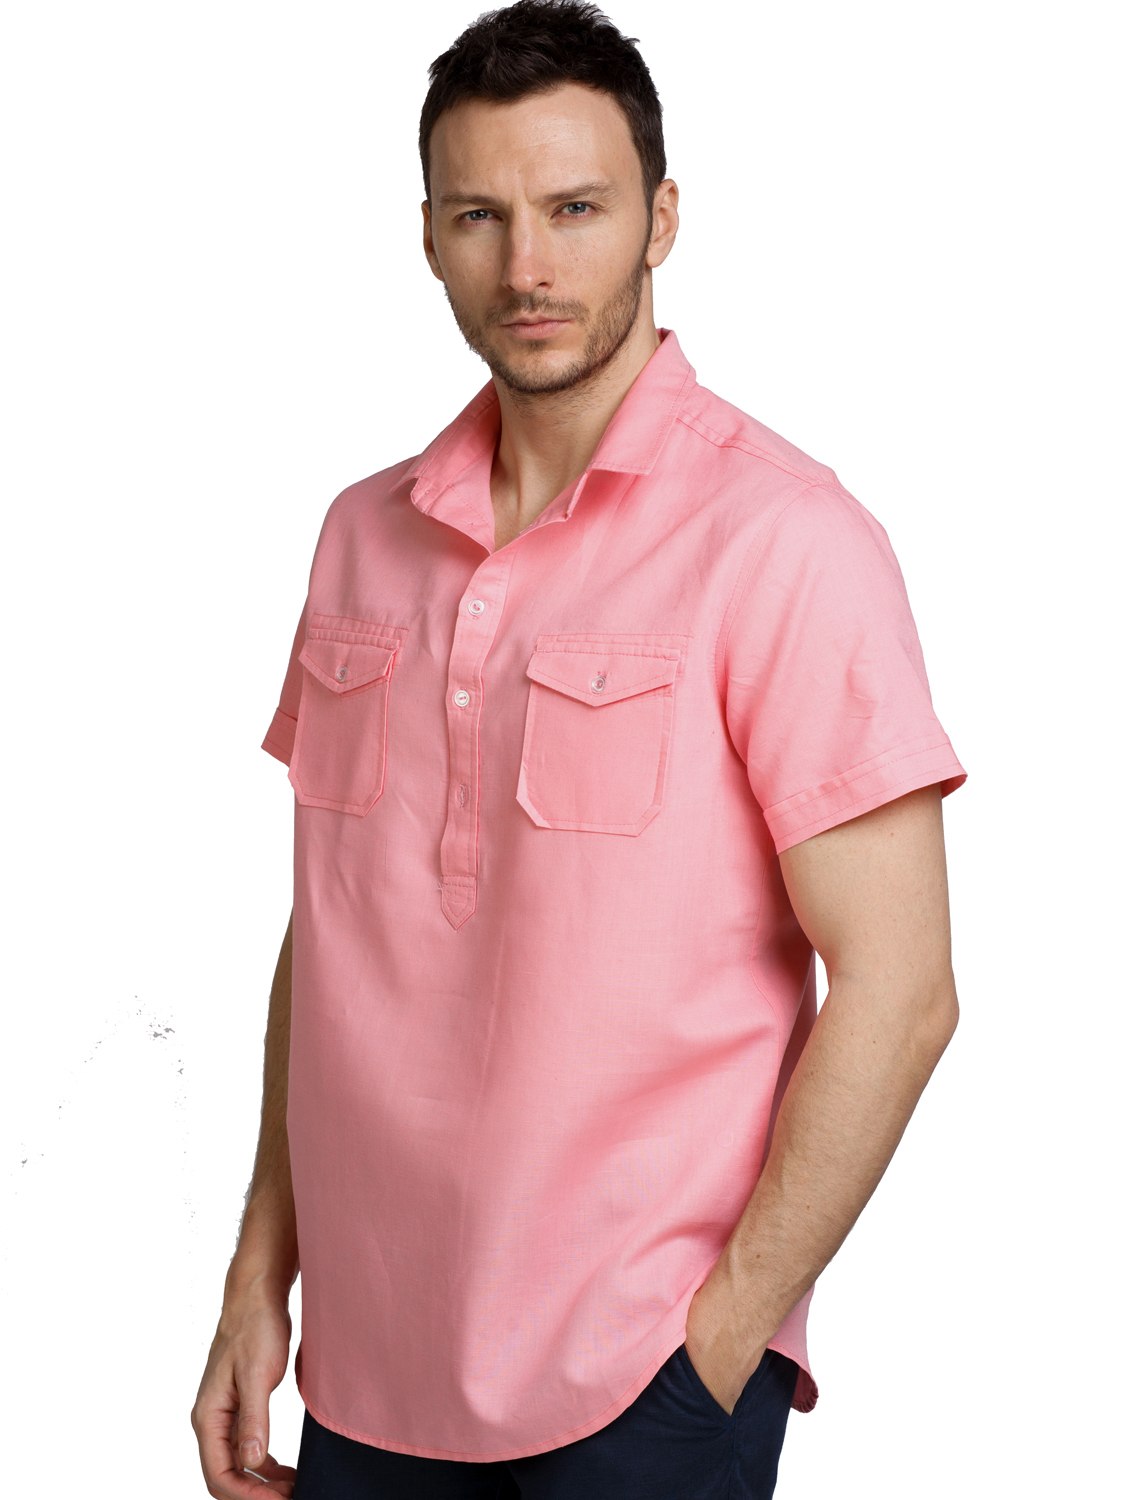 Рубашка летняя мужская с коротким рукавом купить. Розовая рубашка мужская. Летняя рубашка. Розовая рубашка мужская с коротким рукавом. Льняная рубашка с коротким рукавом.